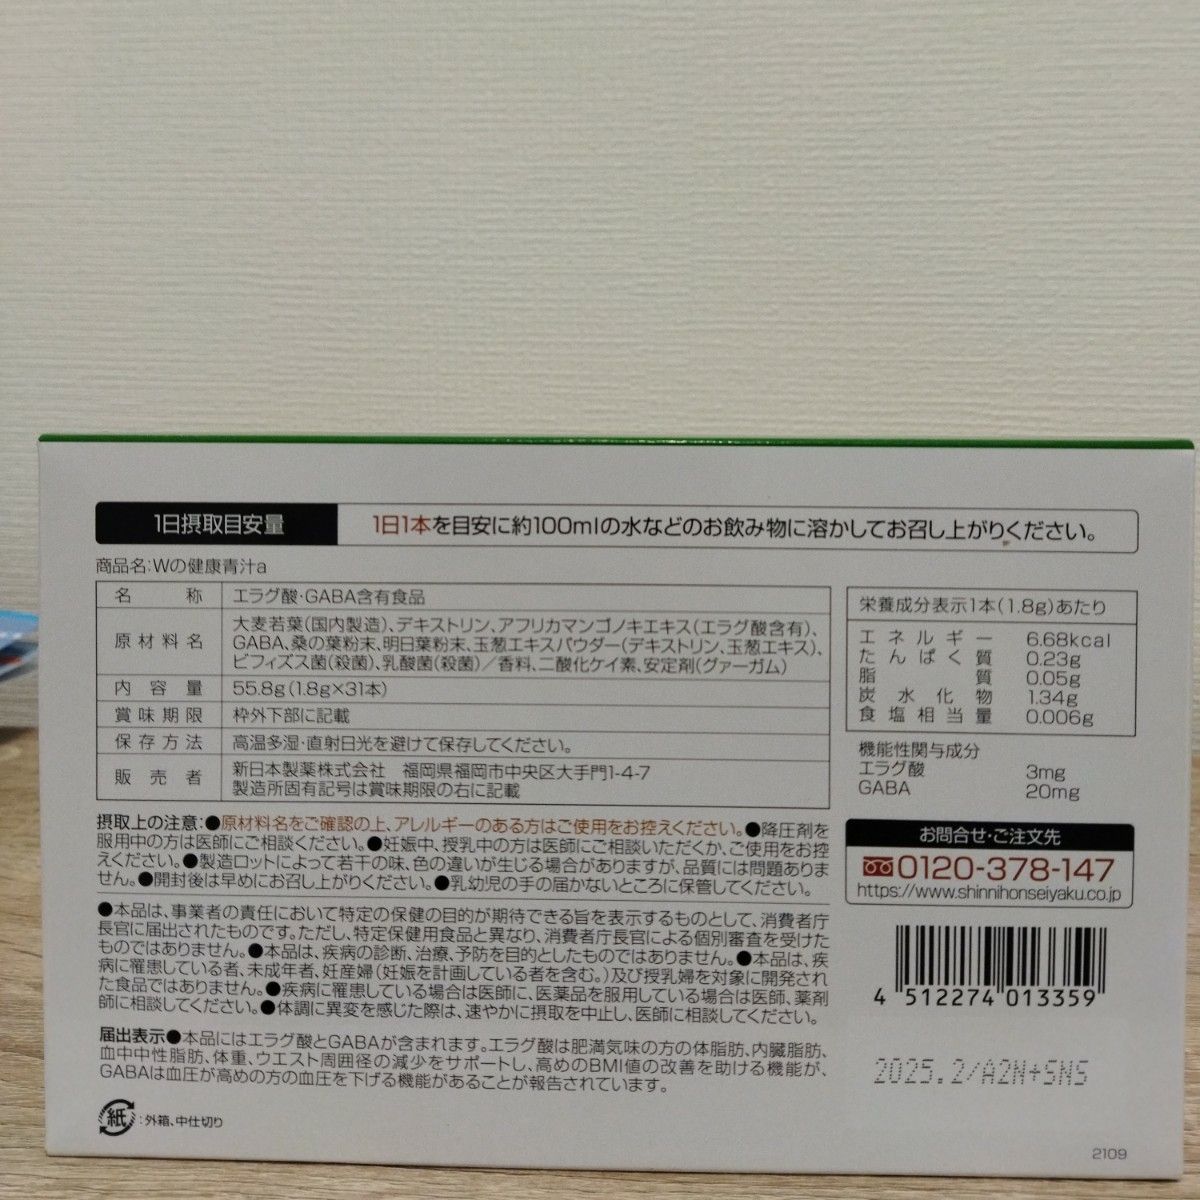 新日本製薬 Wの健康青汁 31本 × 3個